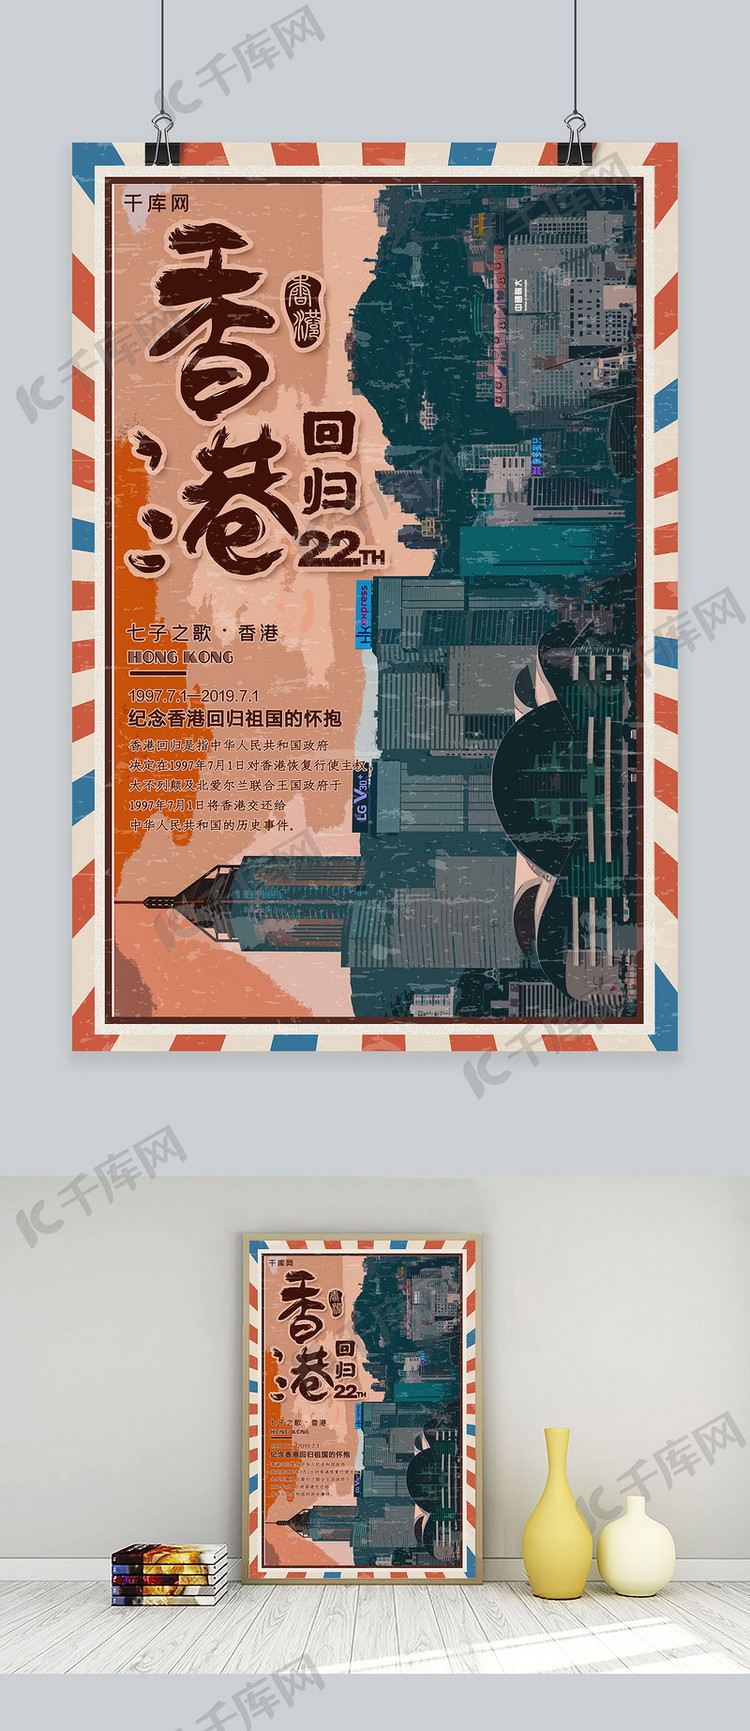 简约创意香港回归纪念日22周年公益海报